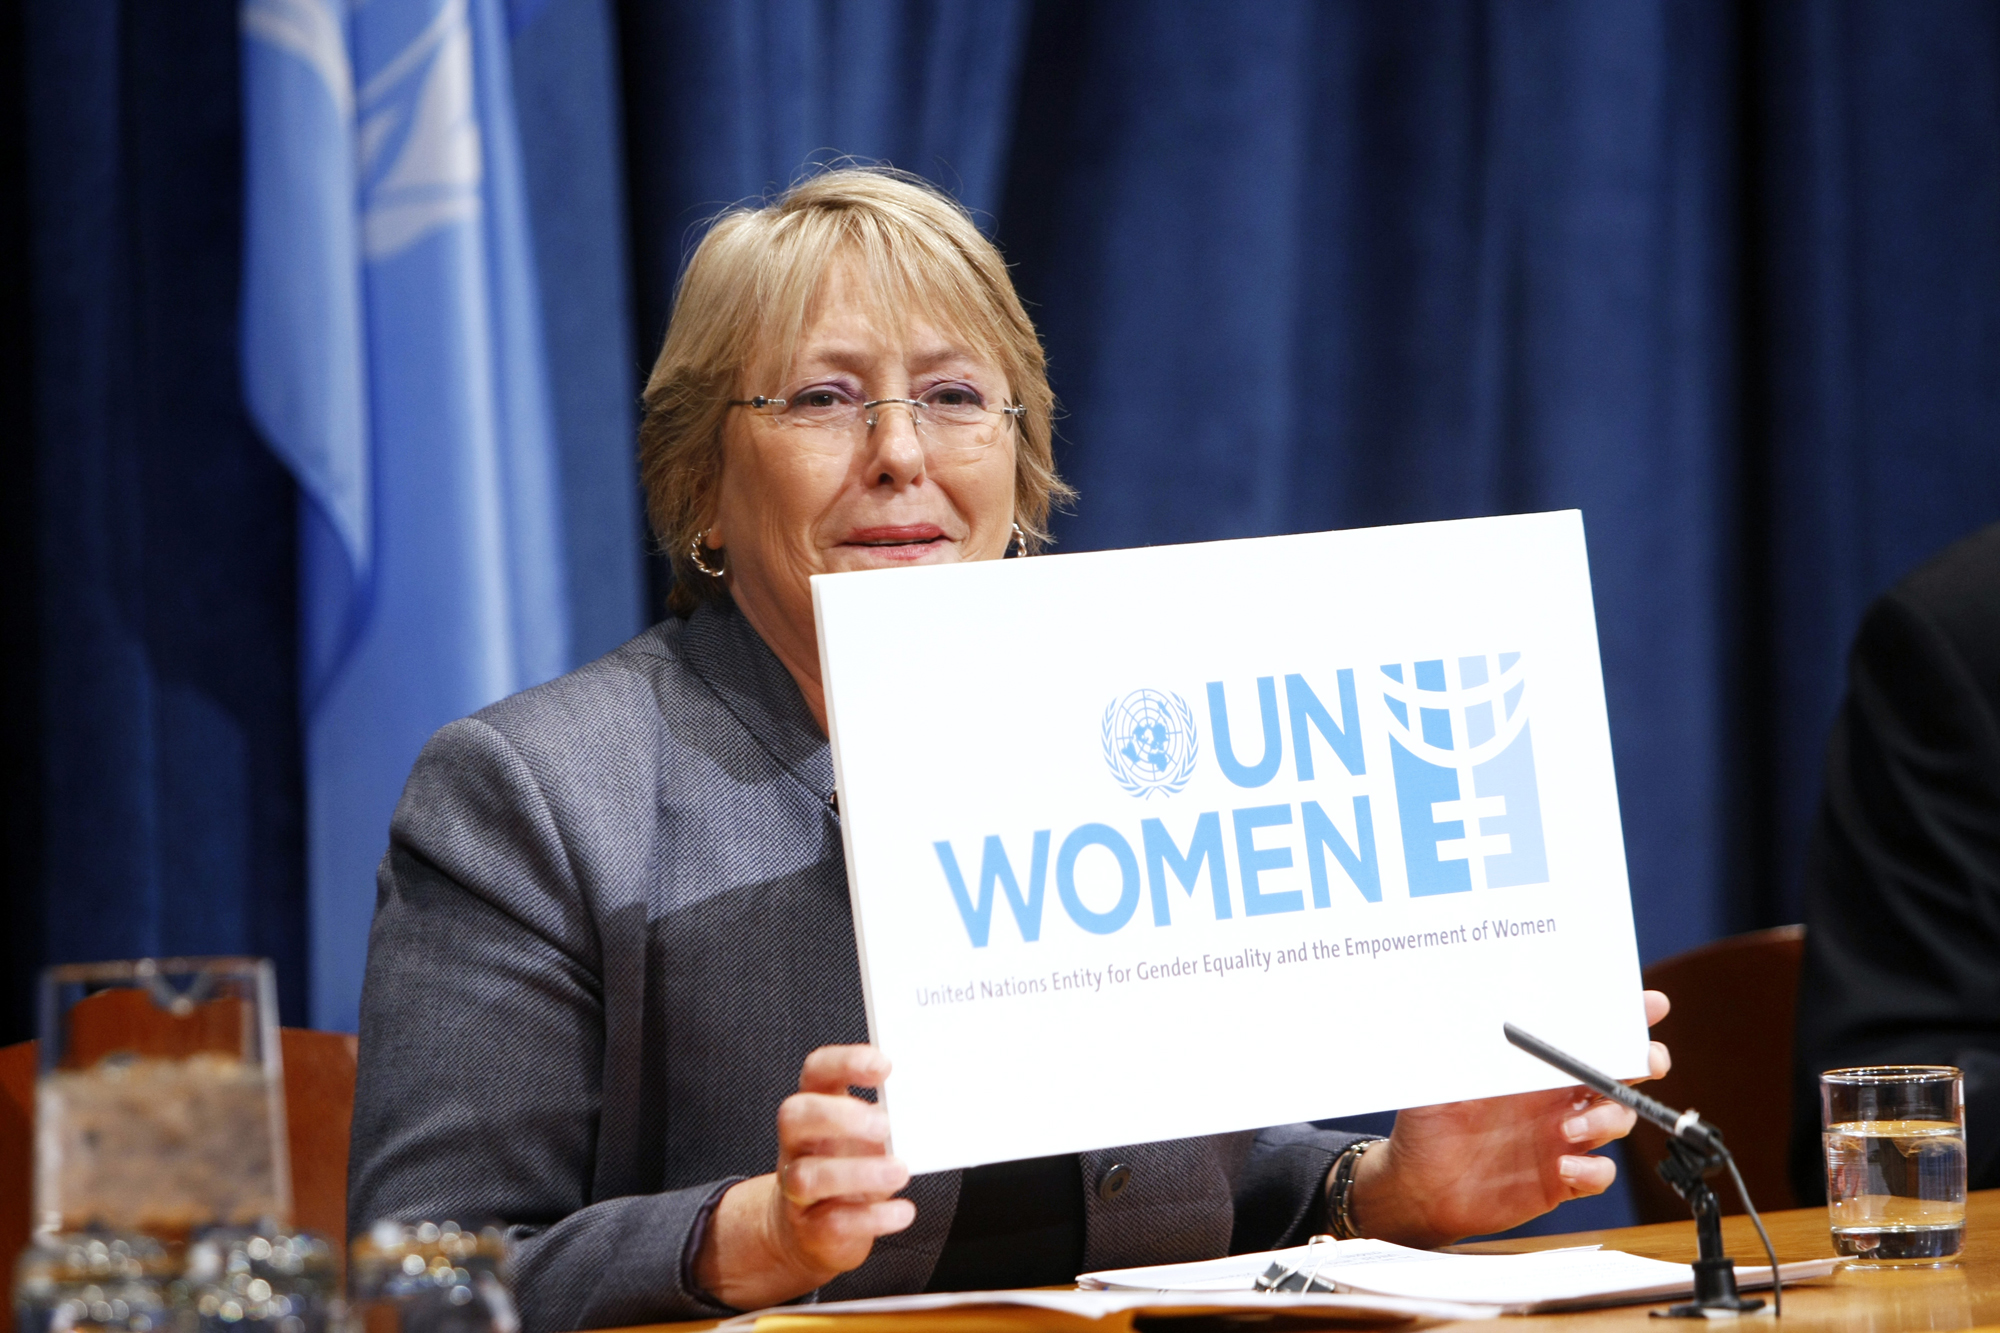 Оон поддерживает. ООН. ООН женщины. Защита прав женщин в ООН. Un women — женщины ООН.